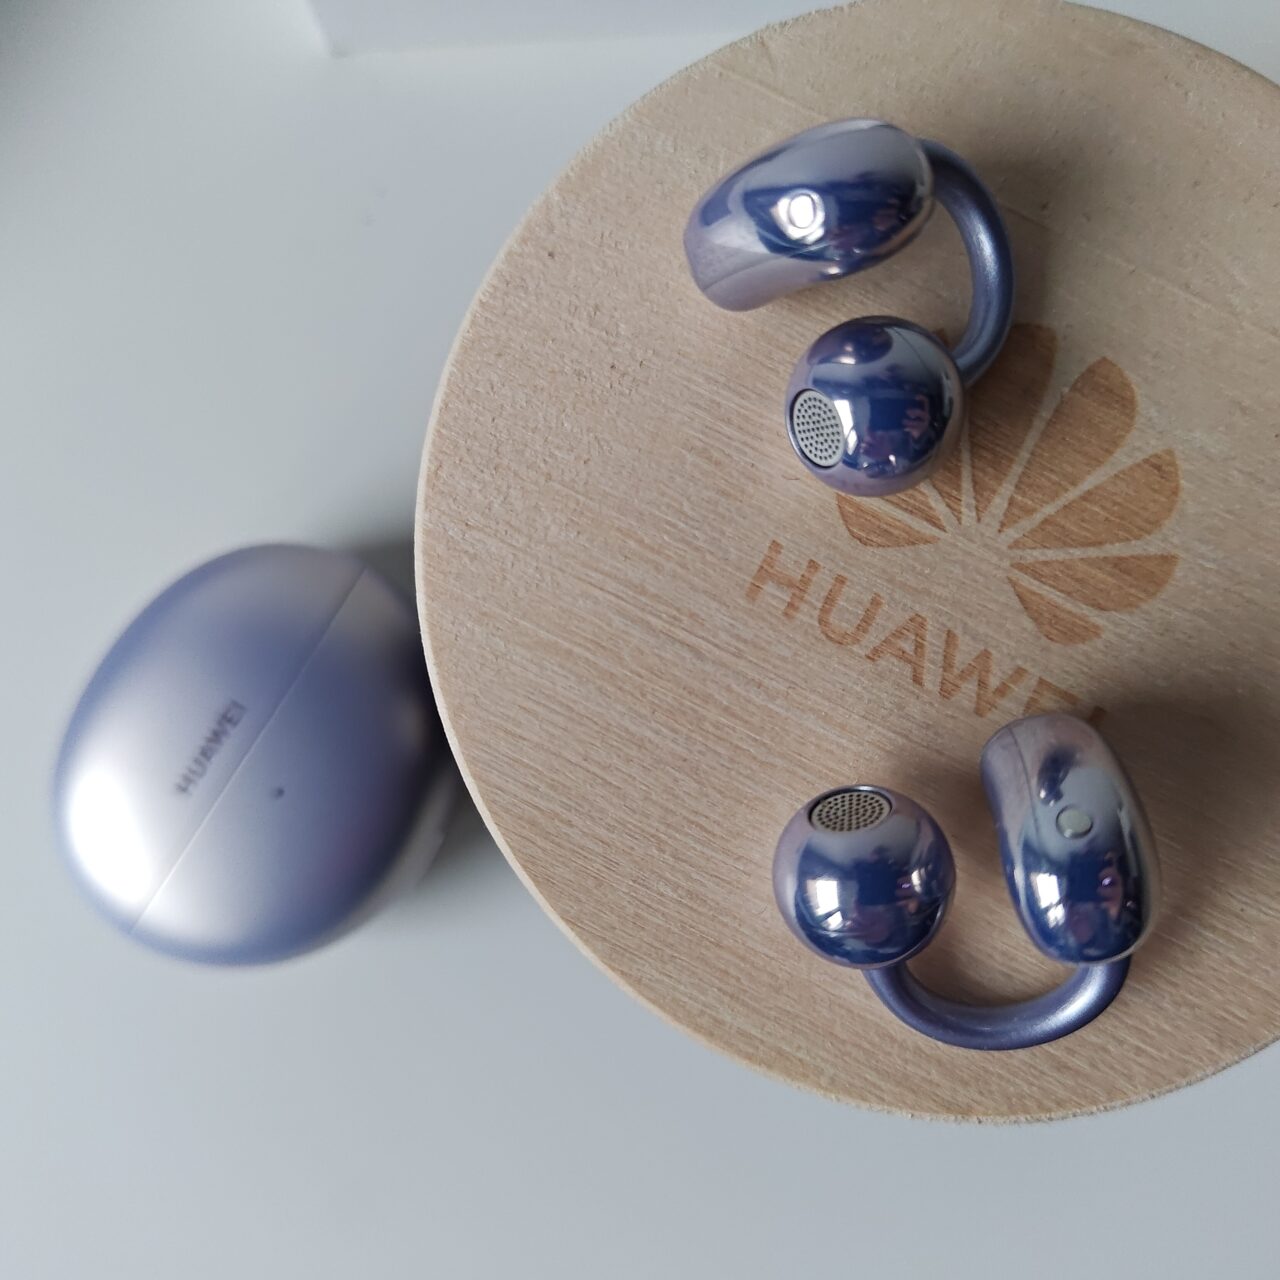 Słuchawki bezprzewodowe marki Huawei i futerał ładujący umieszczone na drewnianej okrągłej podstawce z logo firmy.